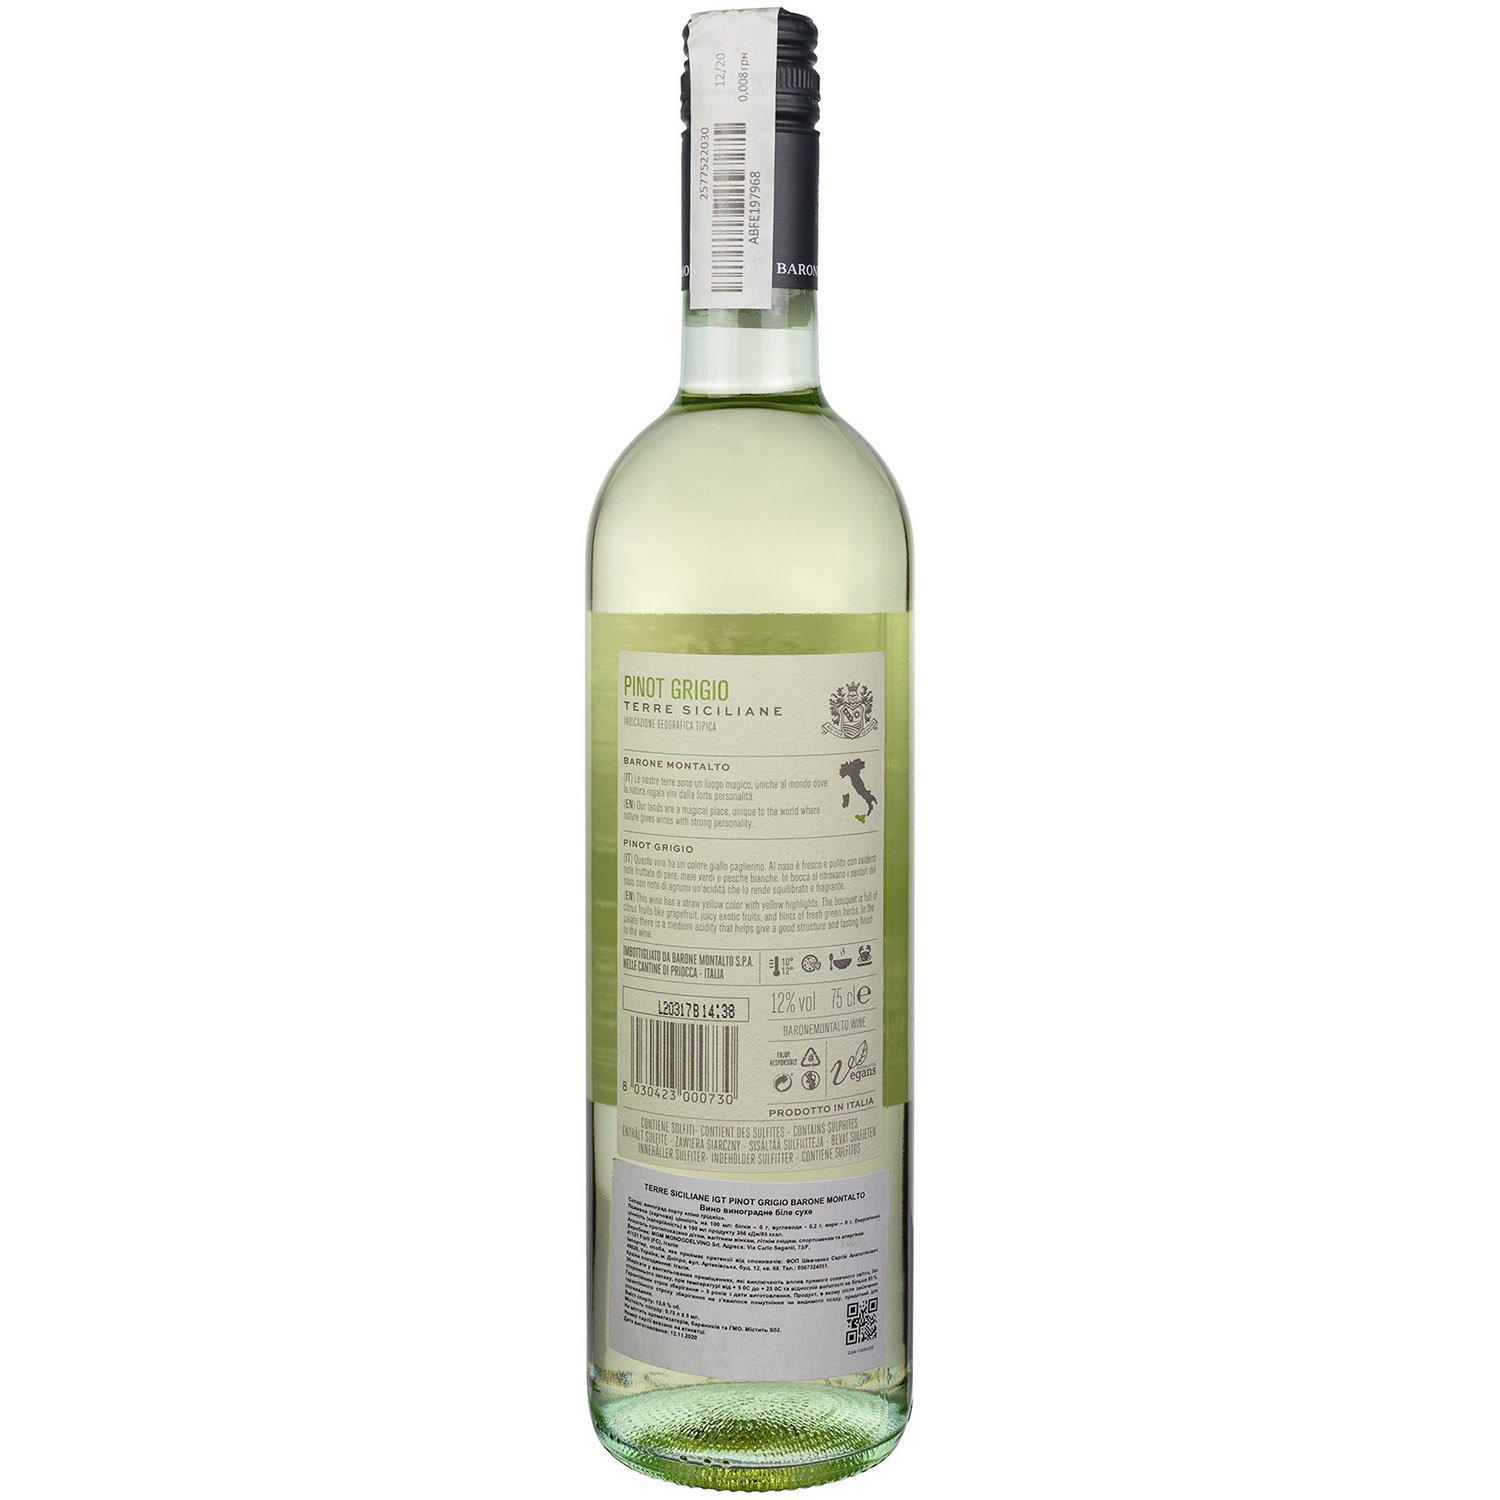 Вино Barone Montalto Pinot Grigio Terre Siciliane IGT, белое, сухое, 0,75 л - фото 2